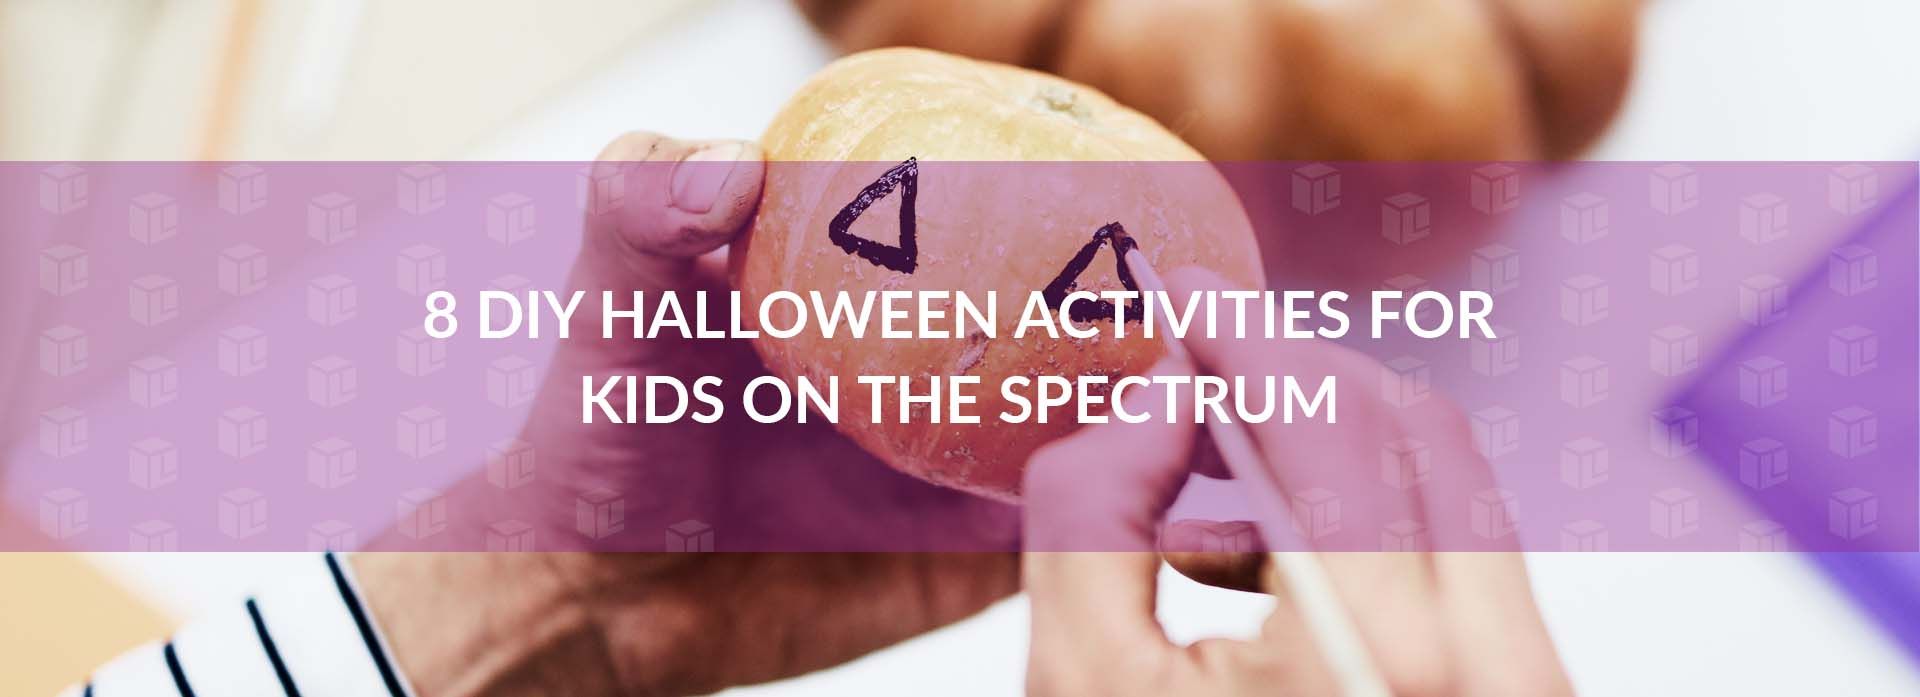 8 DIY Halloween Activities For Kids On The Spectrum